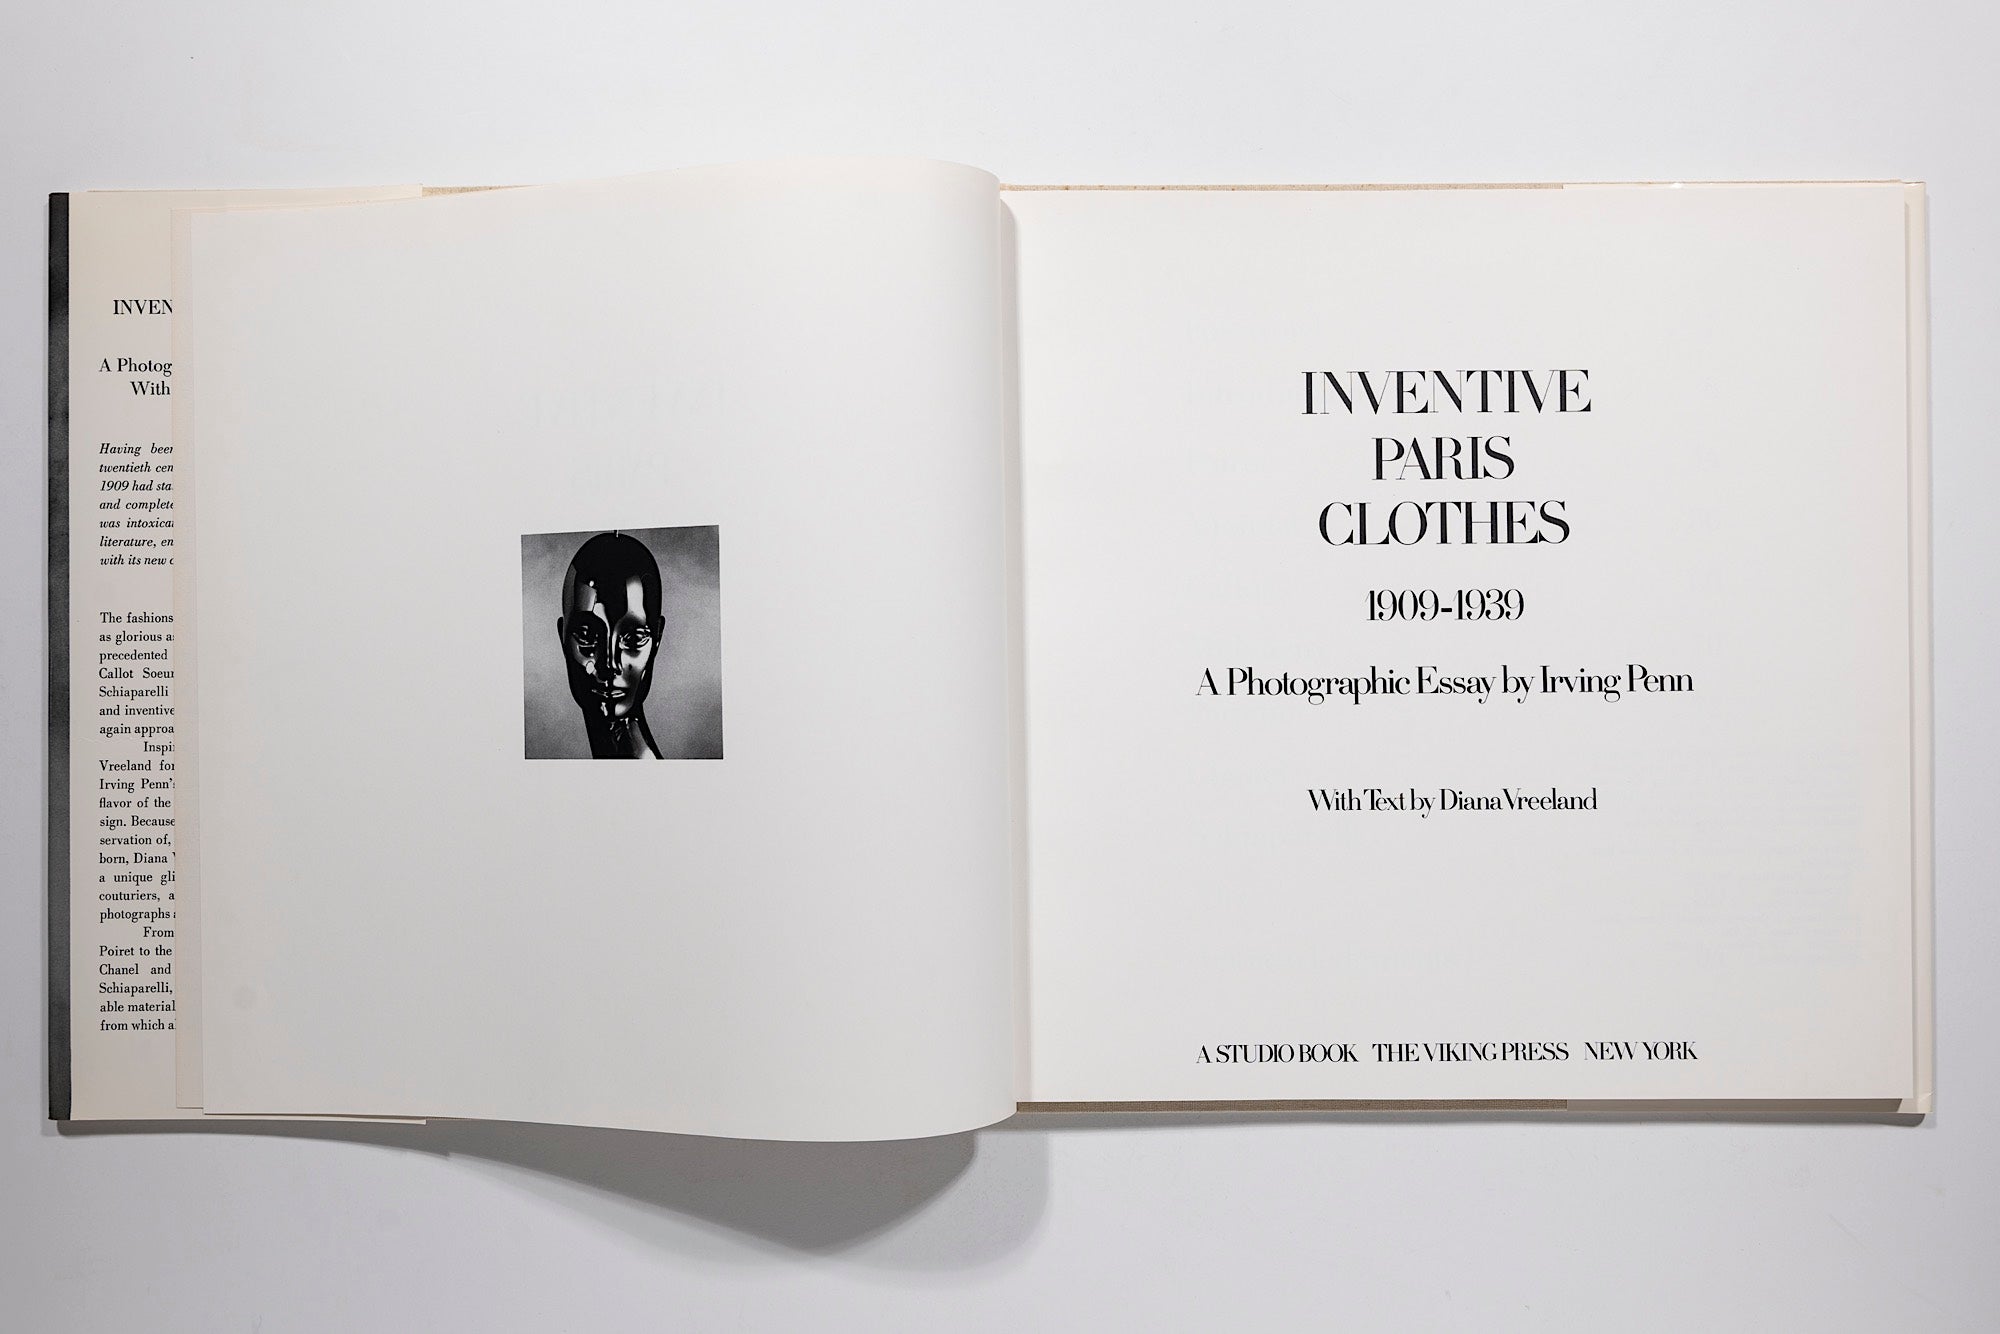 Irving Penn - Inventive Paris Clothes, 1909-1939